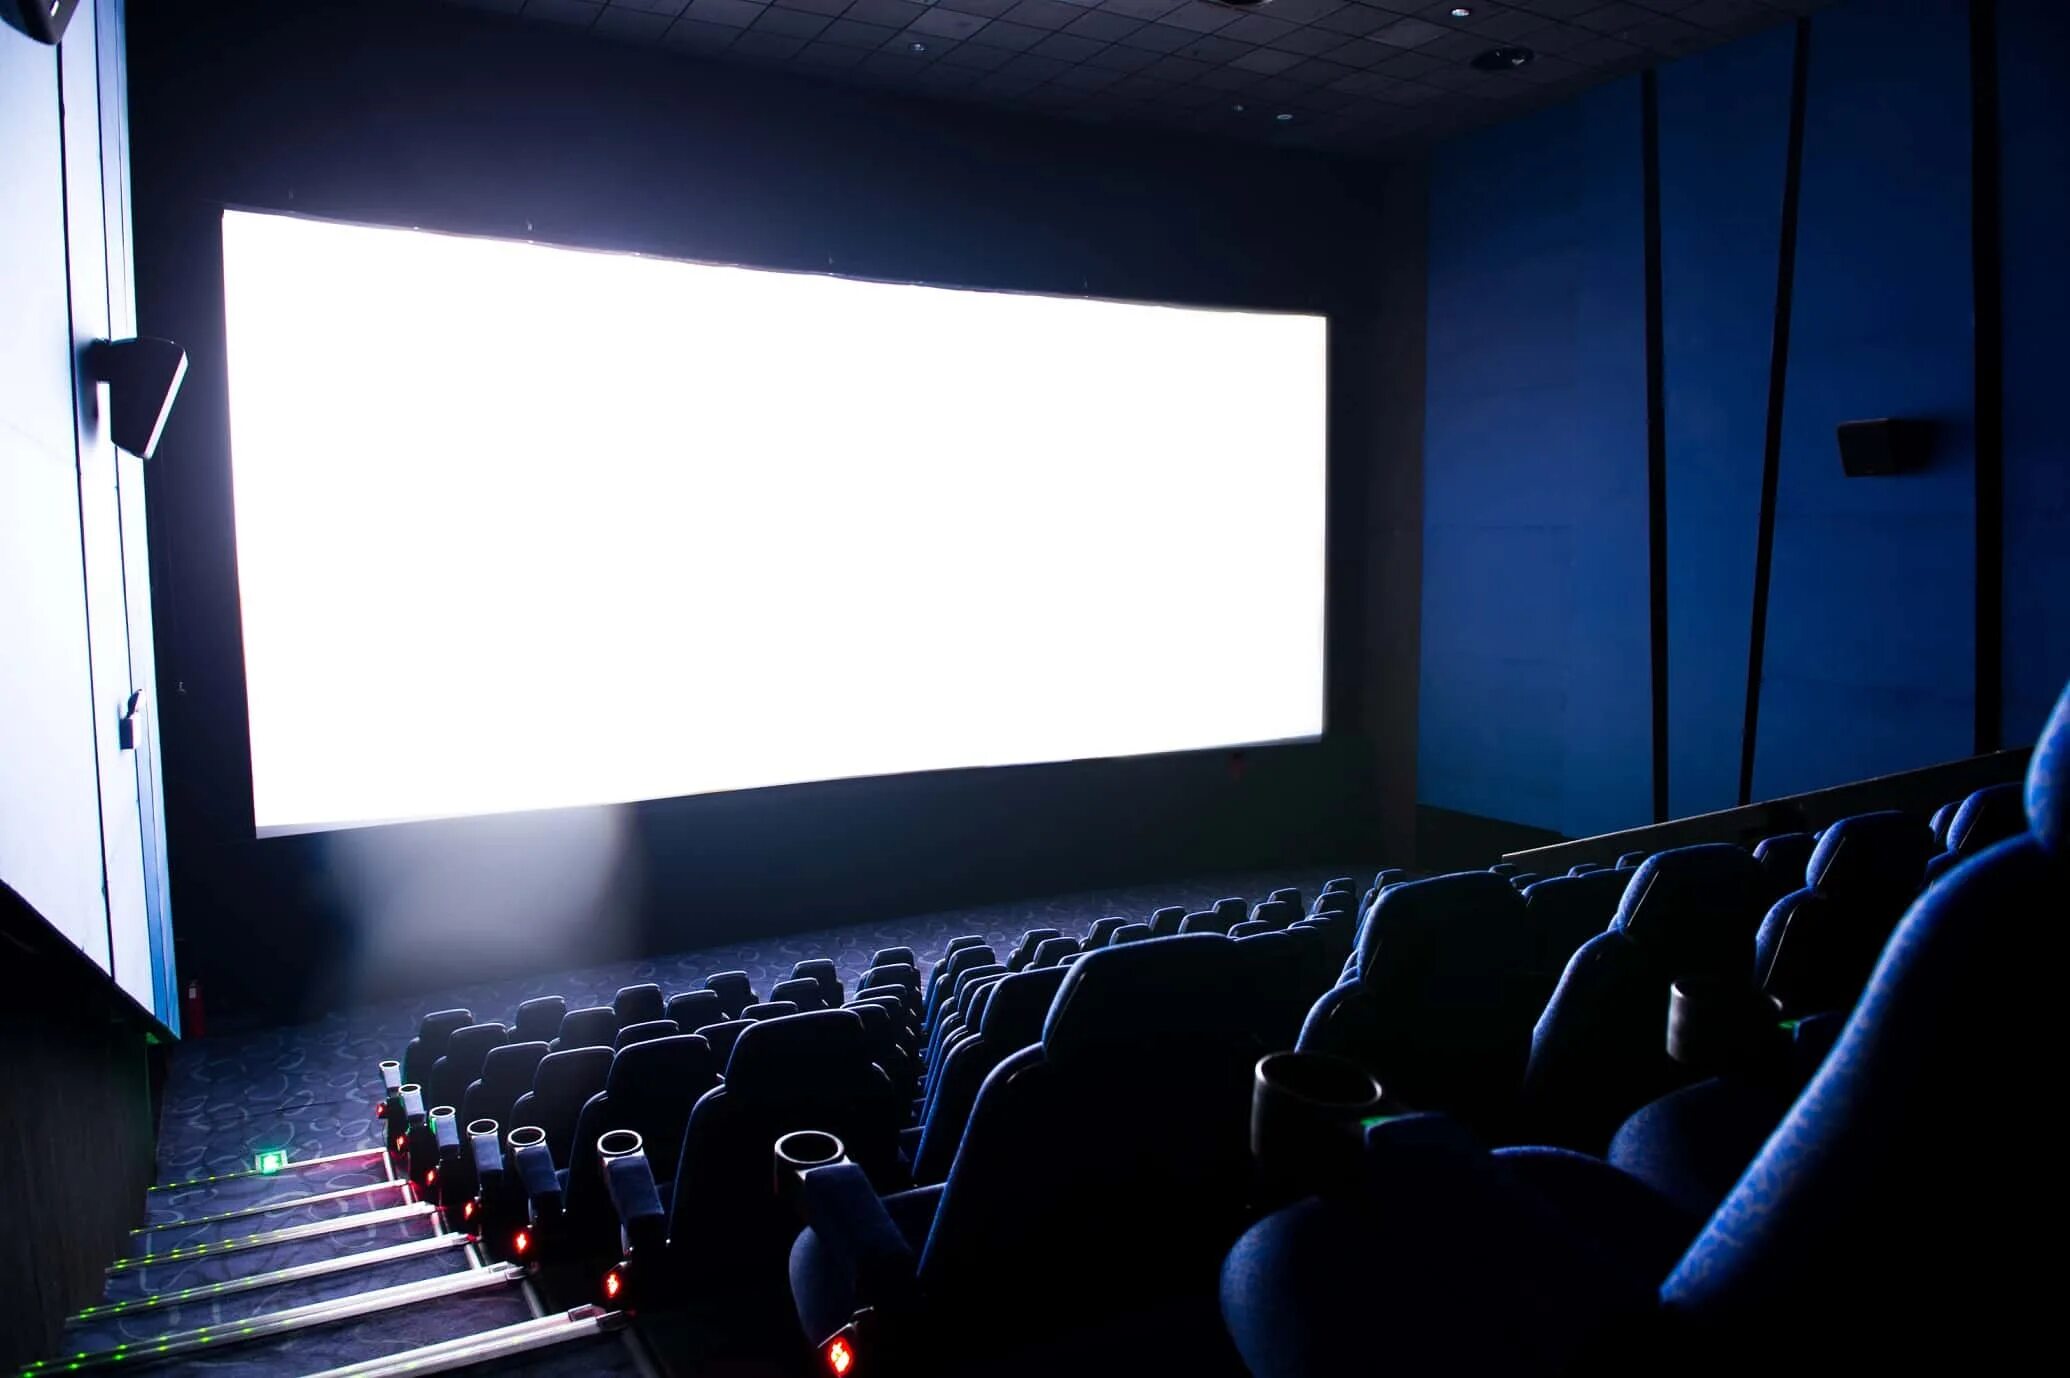 Экран кинотеатра. Зал кинотеатра. Кинотеатр в темноте. Пустой кинозал. Бесплатный кинотеатр на телефоне